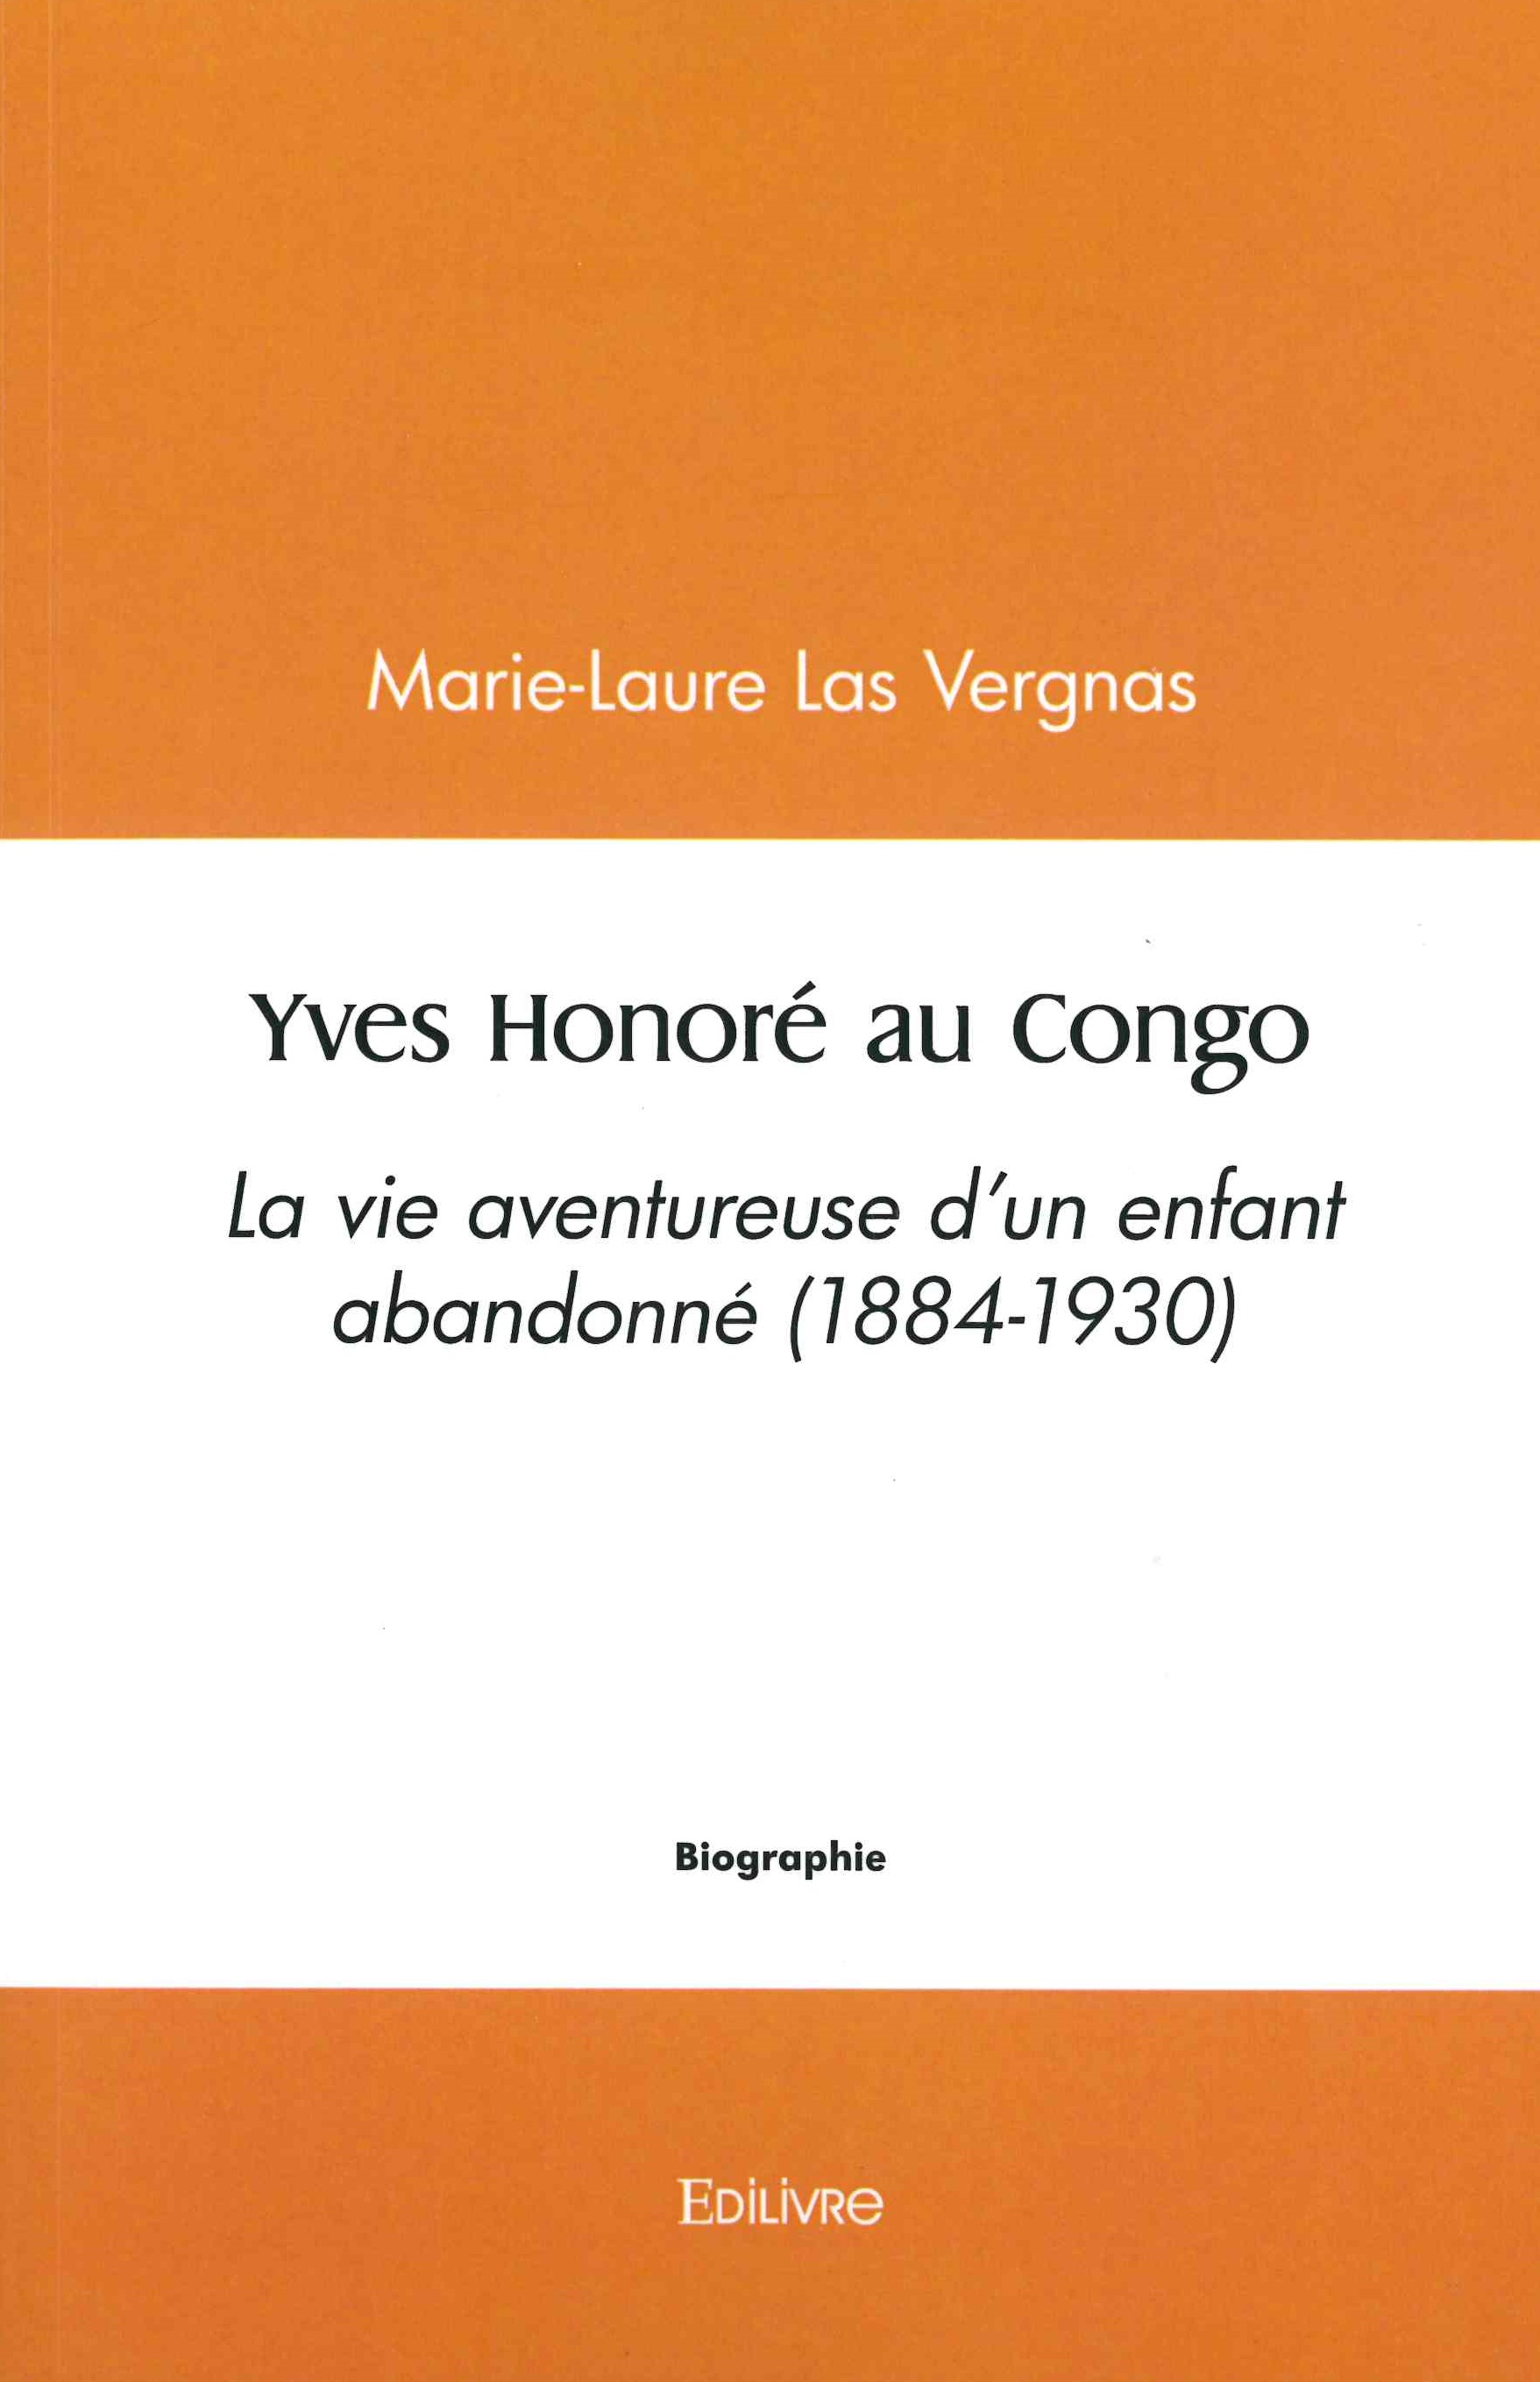 Las Vergnas (Marie-Laure), Yves Honoré au Congo. La vie aventureuse d’un enfant abandonné (1884-1930)